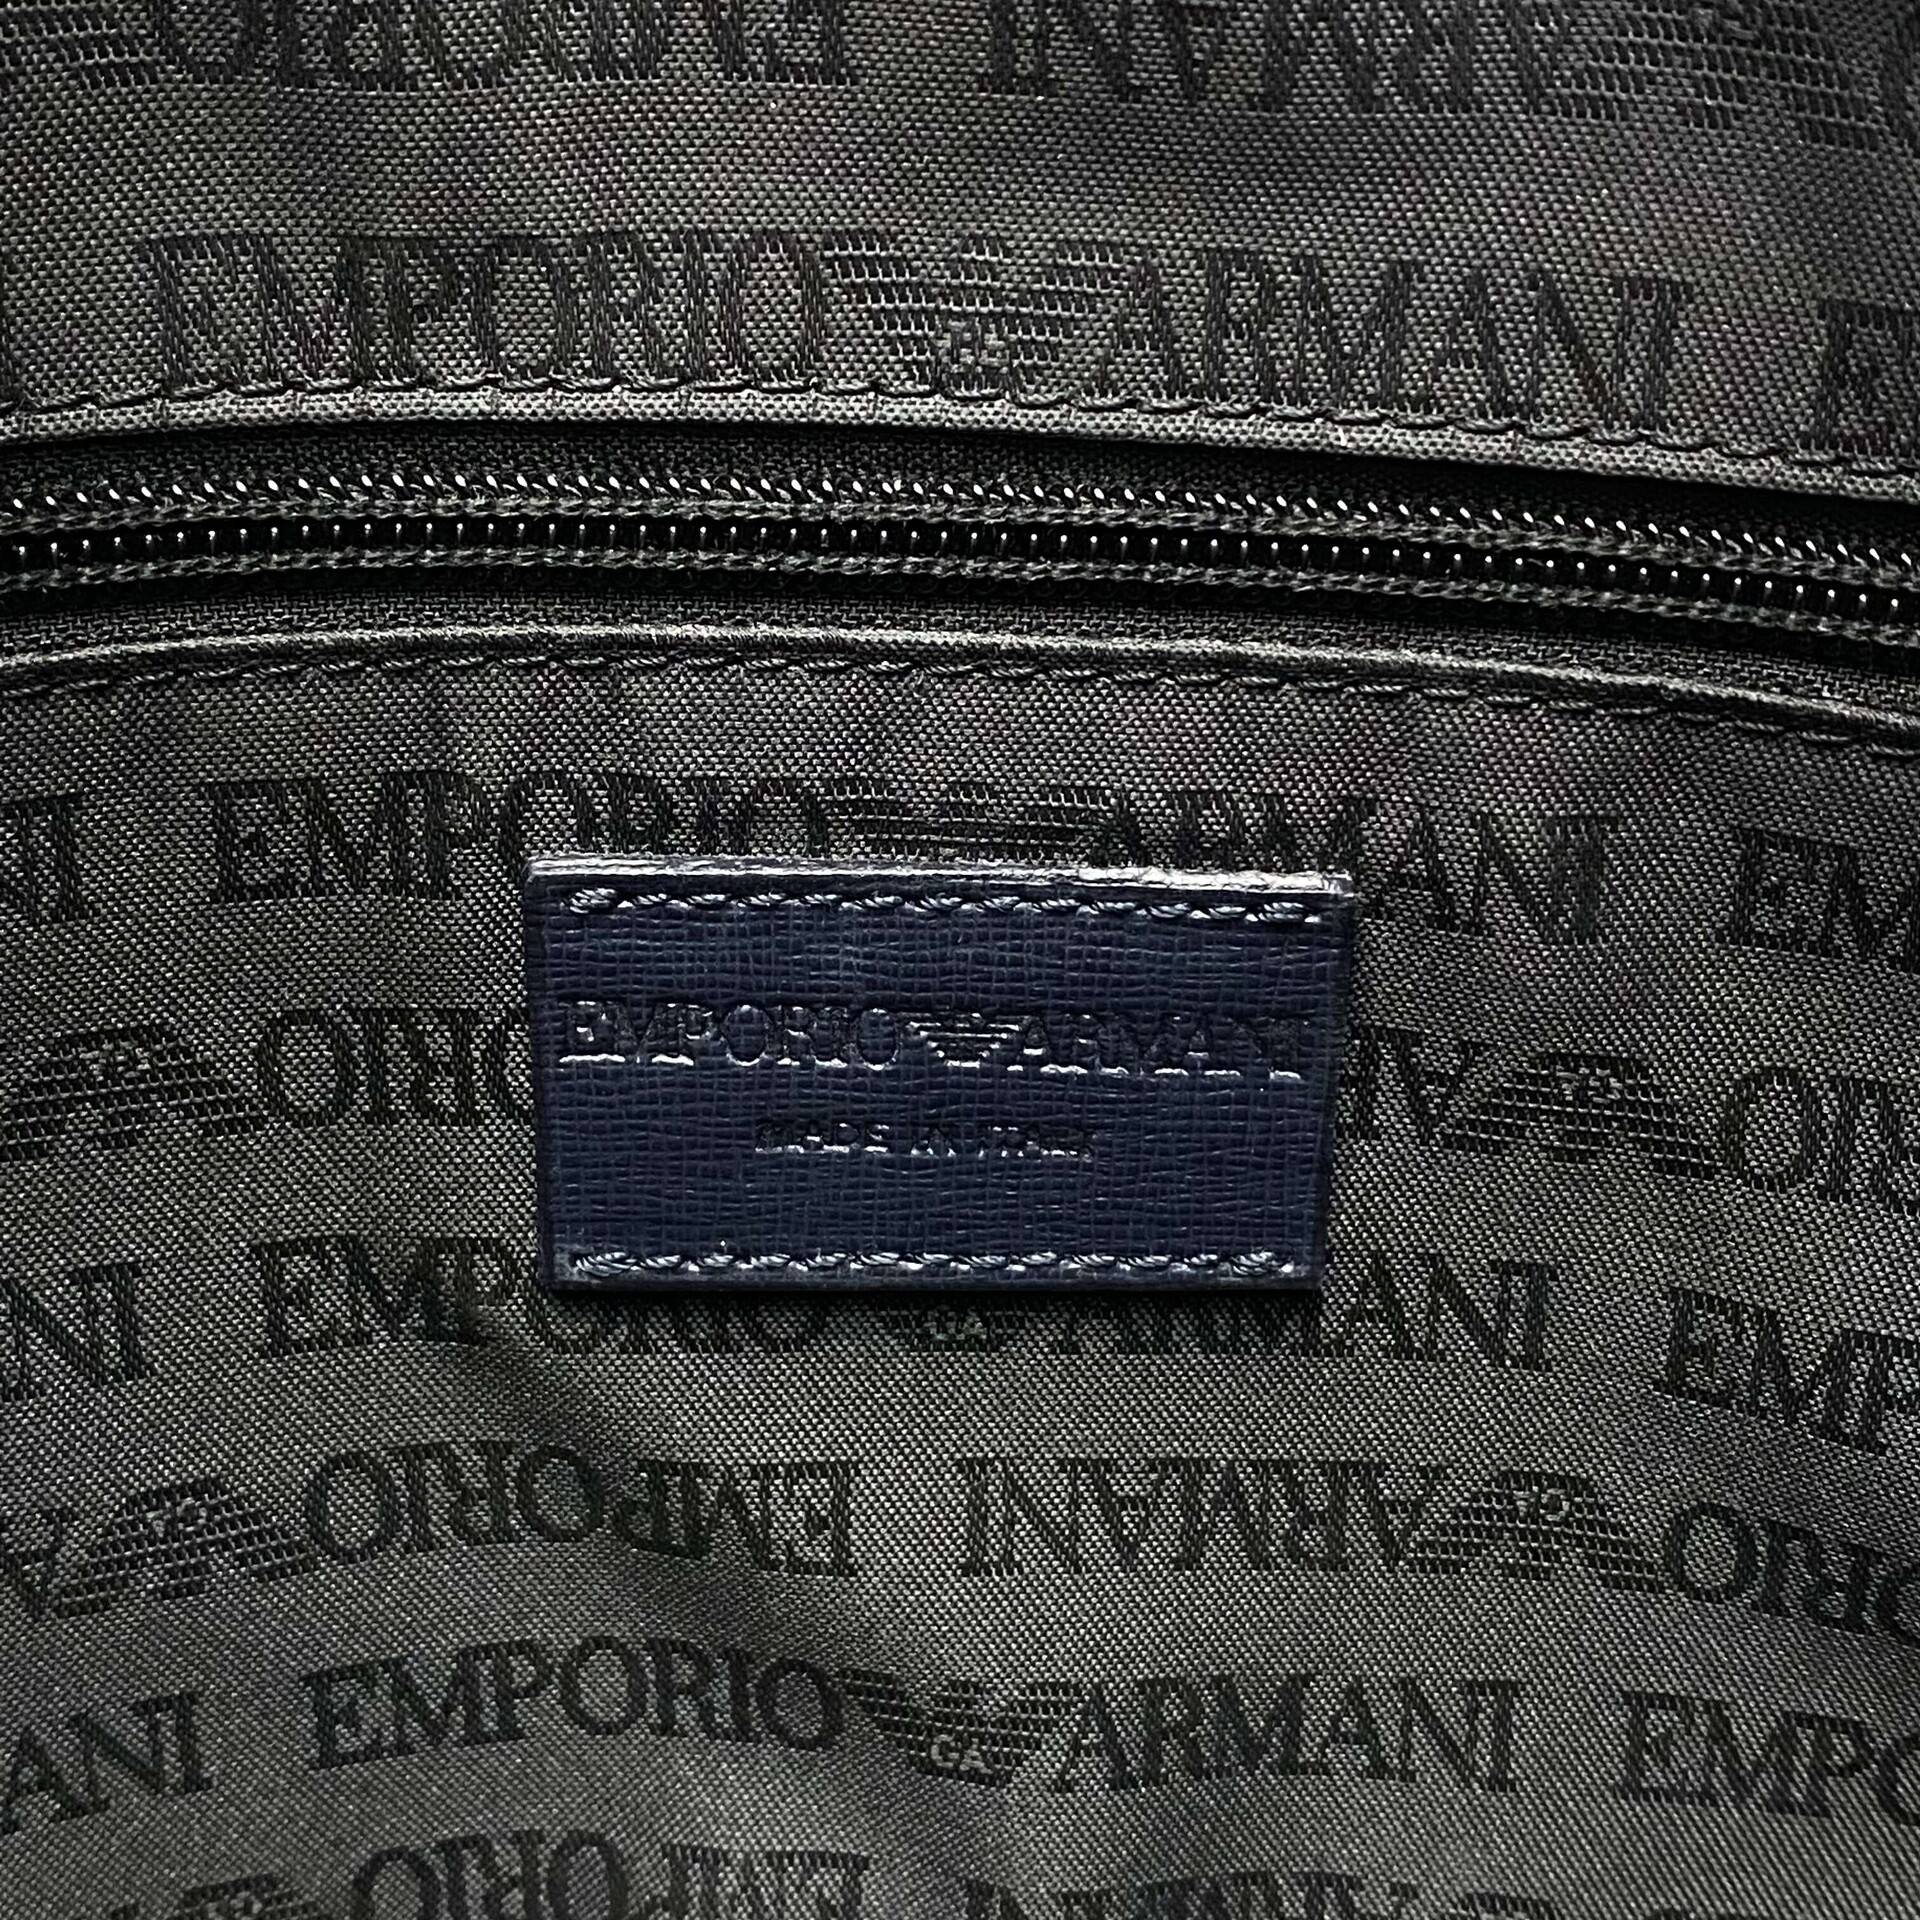 Bolsa Emporio Armani Azul Marinho